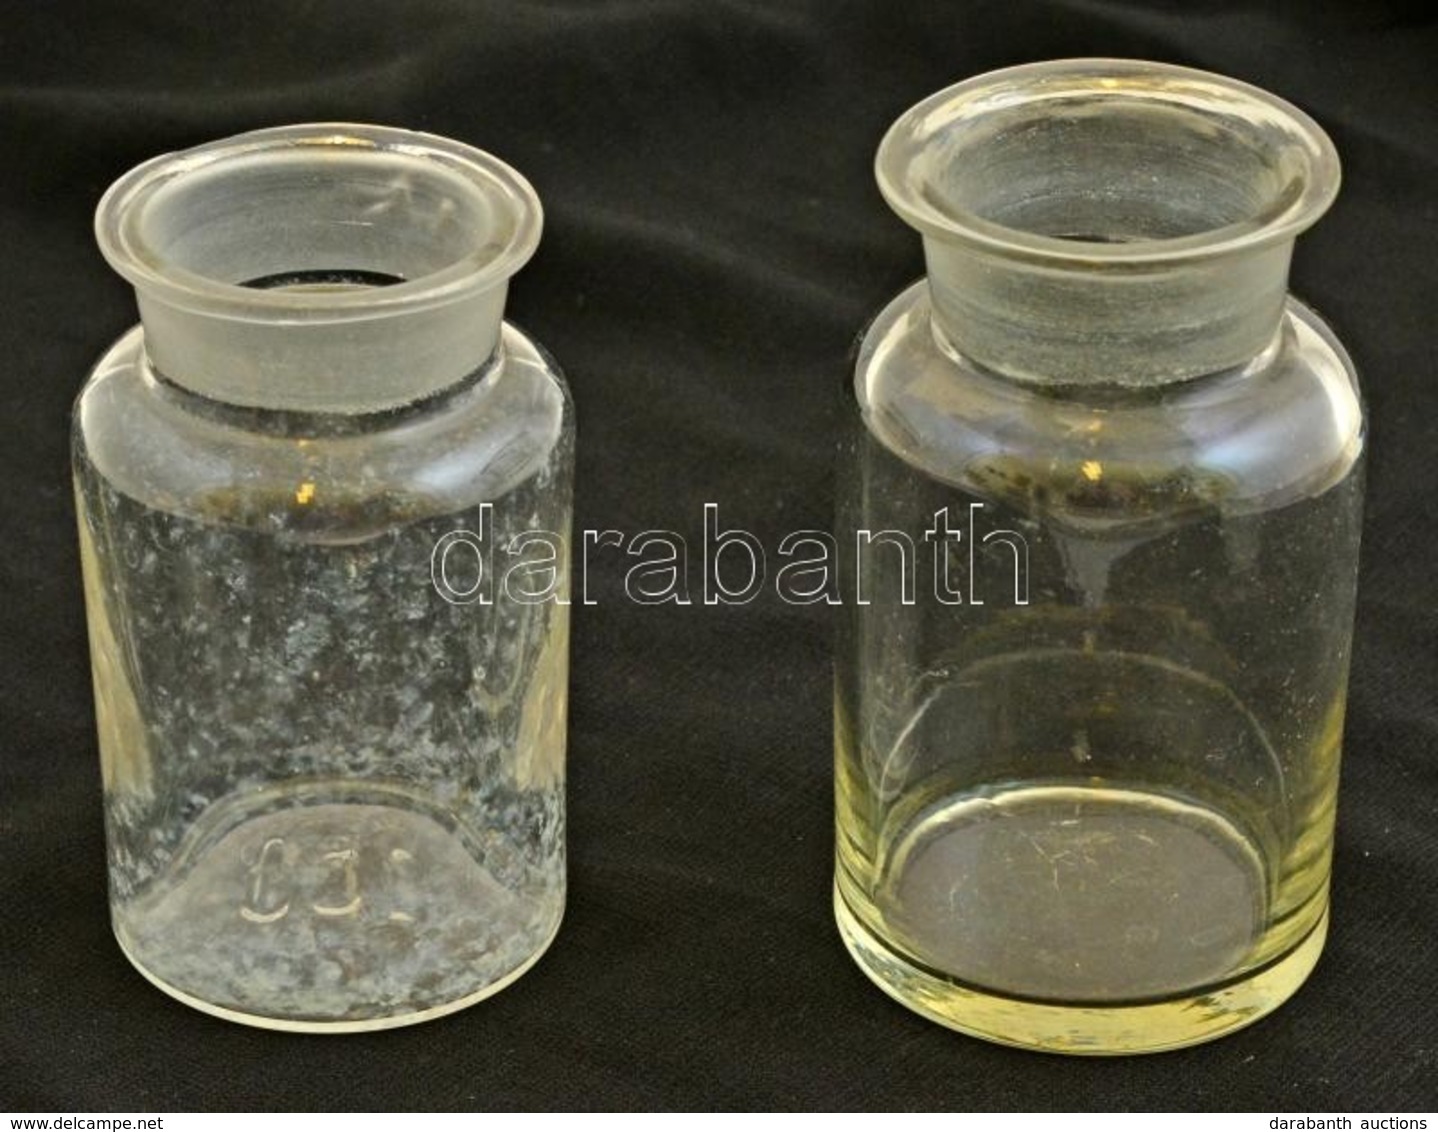 8 Db Dugós üvegcse, 8 Db üvegdugóval, Némelyik Kis Csorbával, Különböz? Méretben - Glas & Kristall